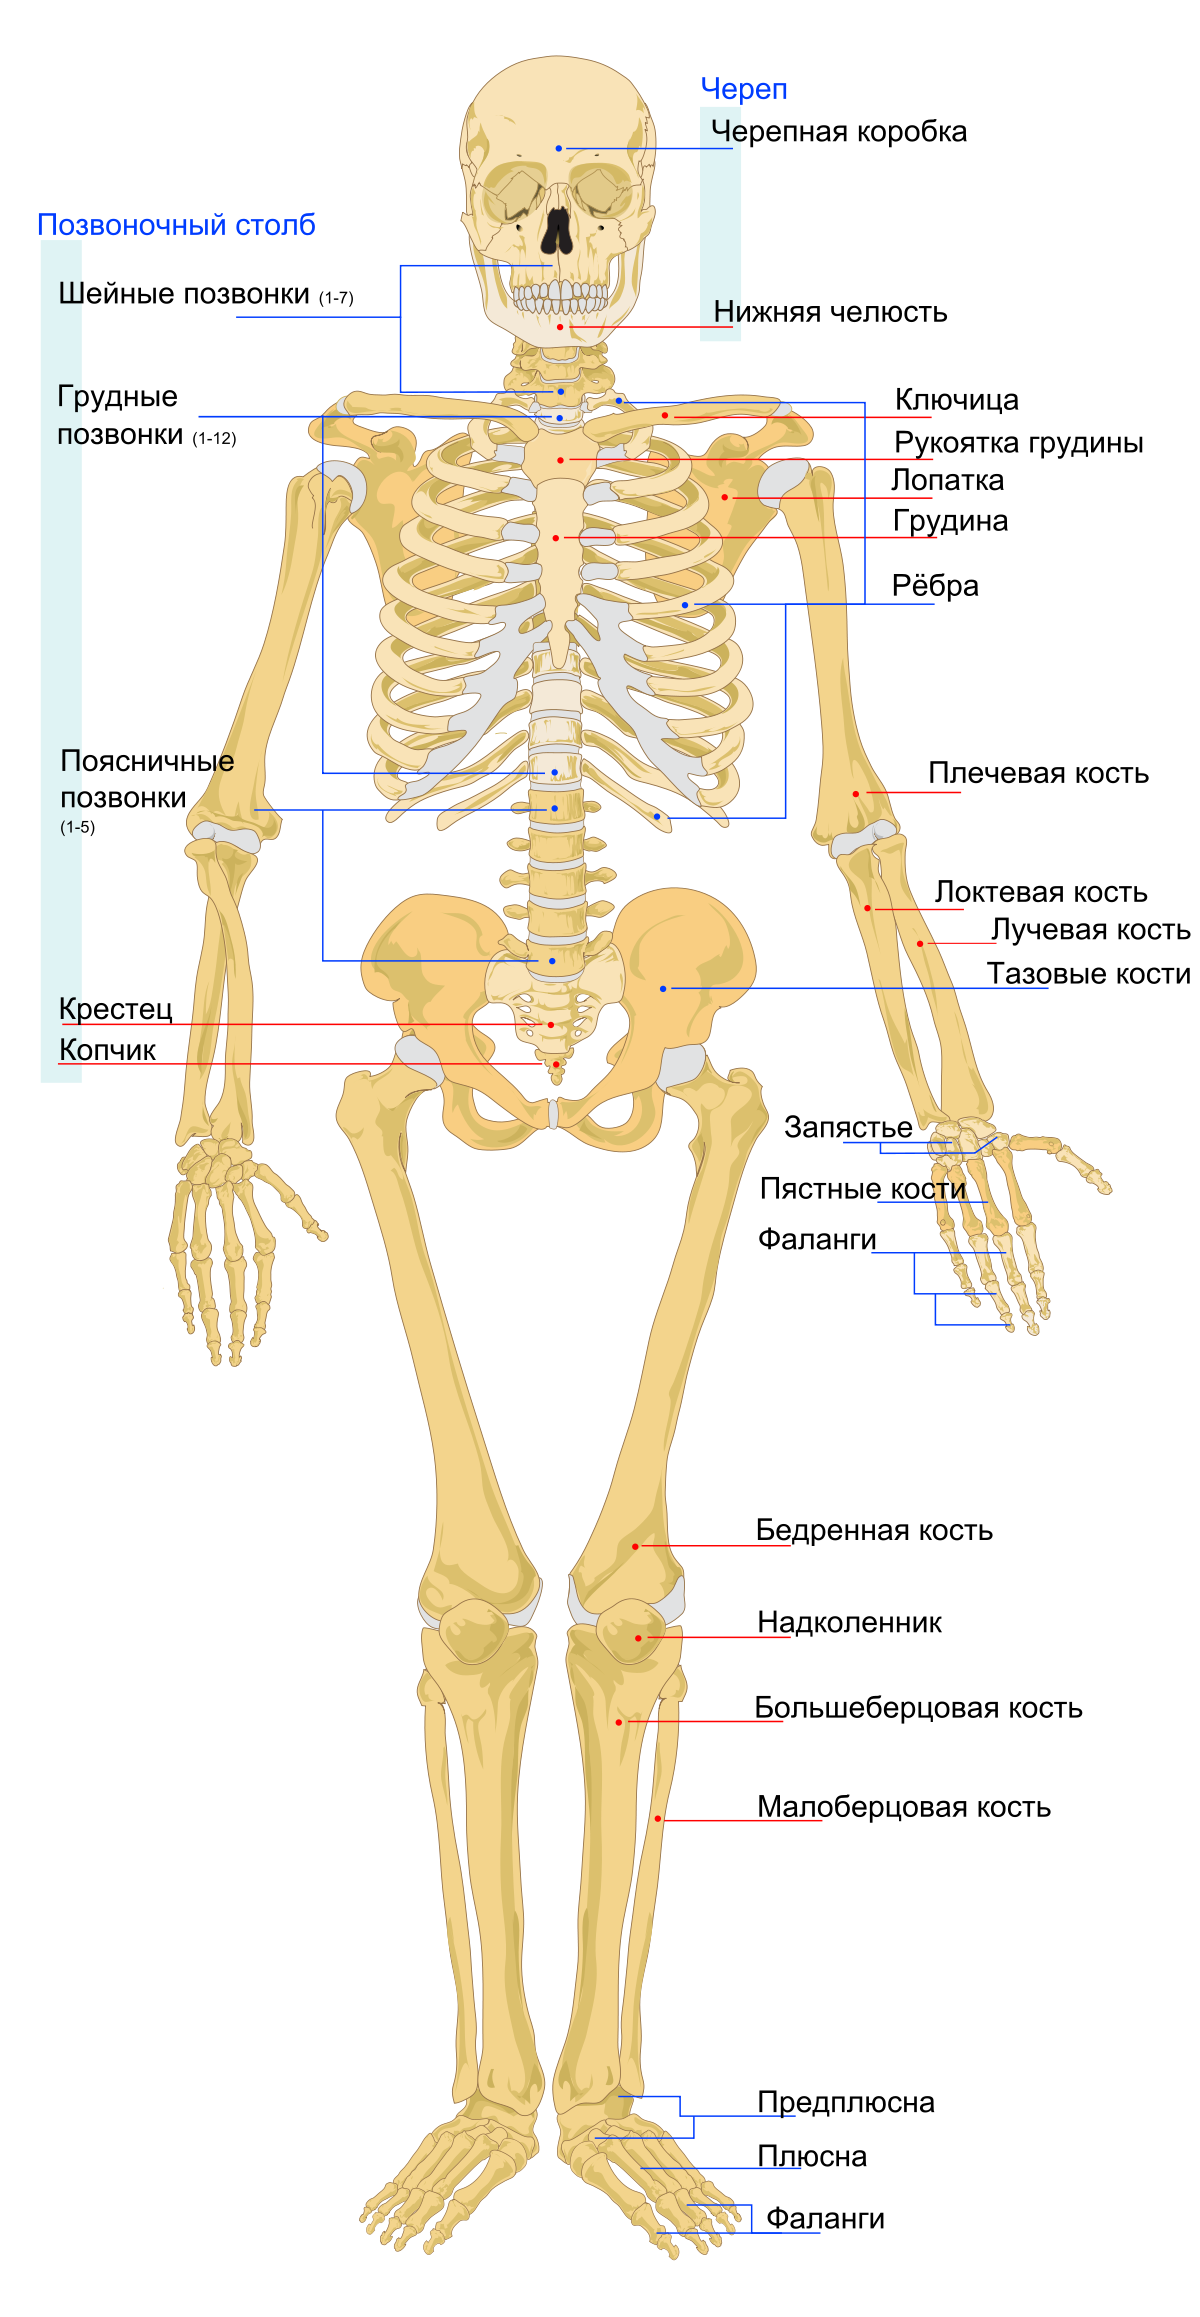 Схема Скелета Человека Фото